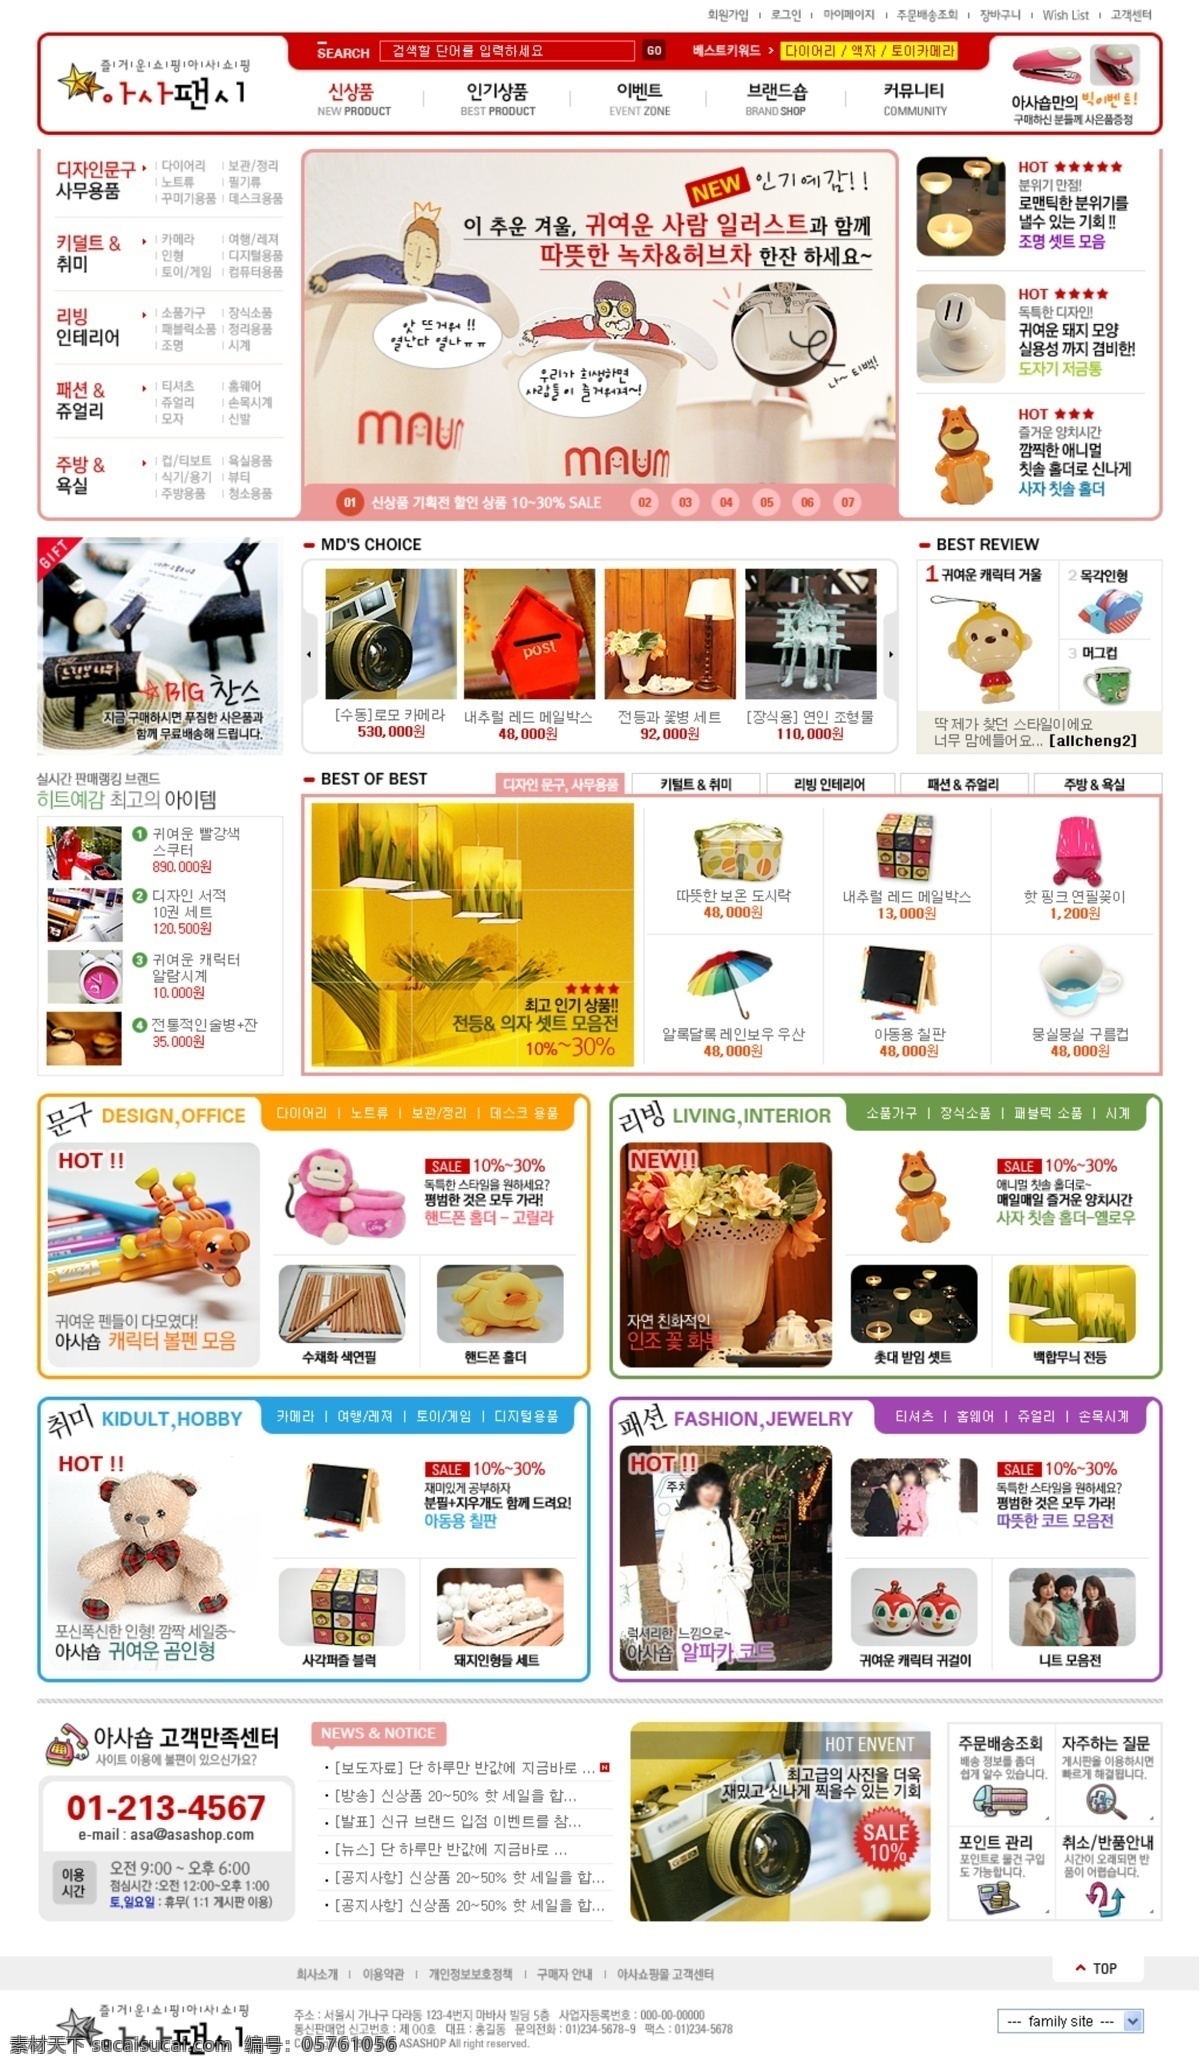 桌面 创意 饰品 商城 网页模板 韩国风格 线条 网页素材